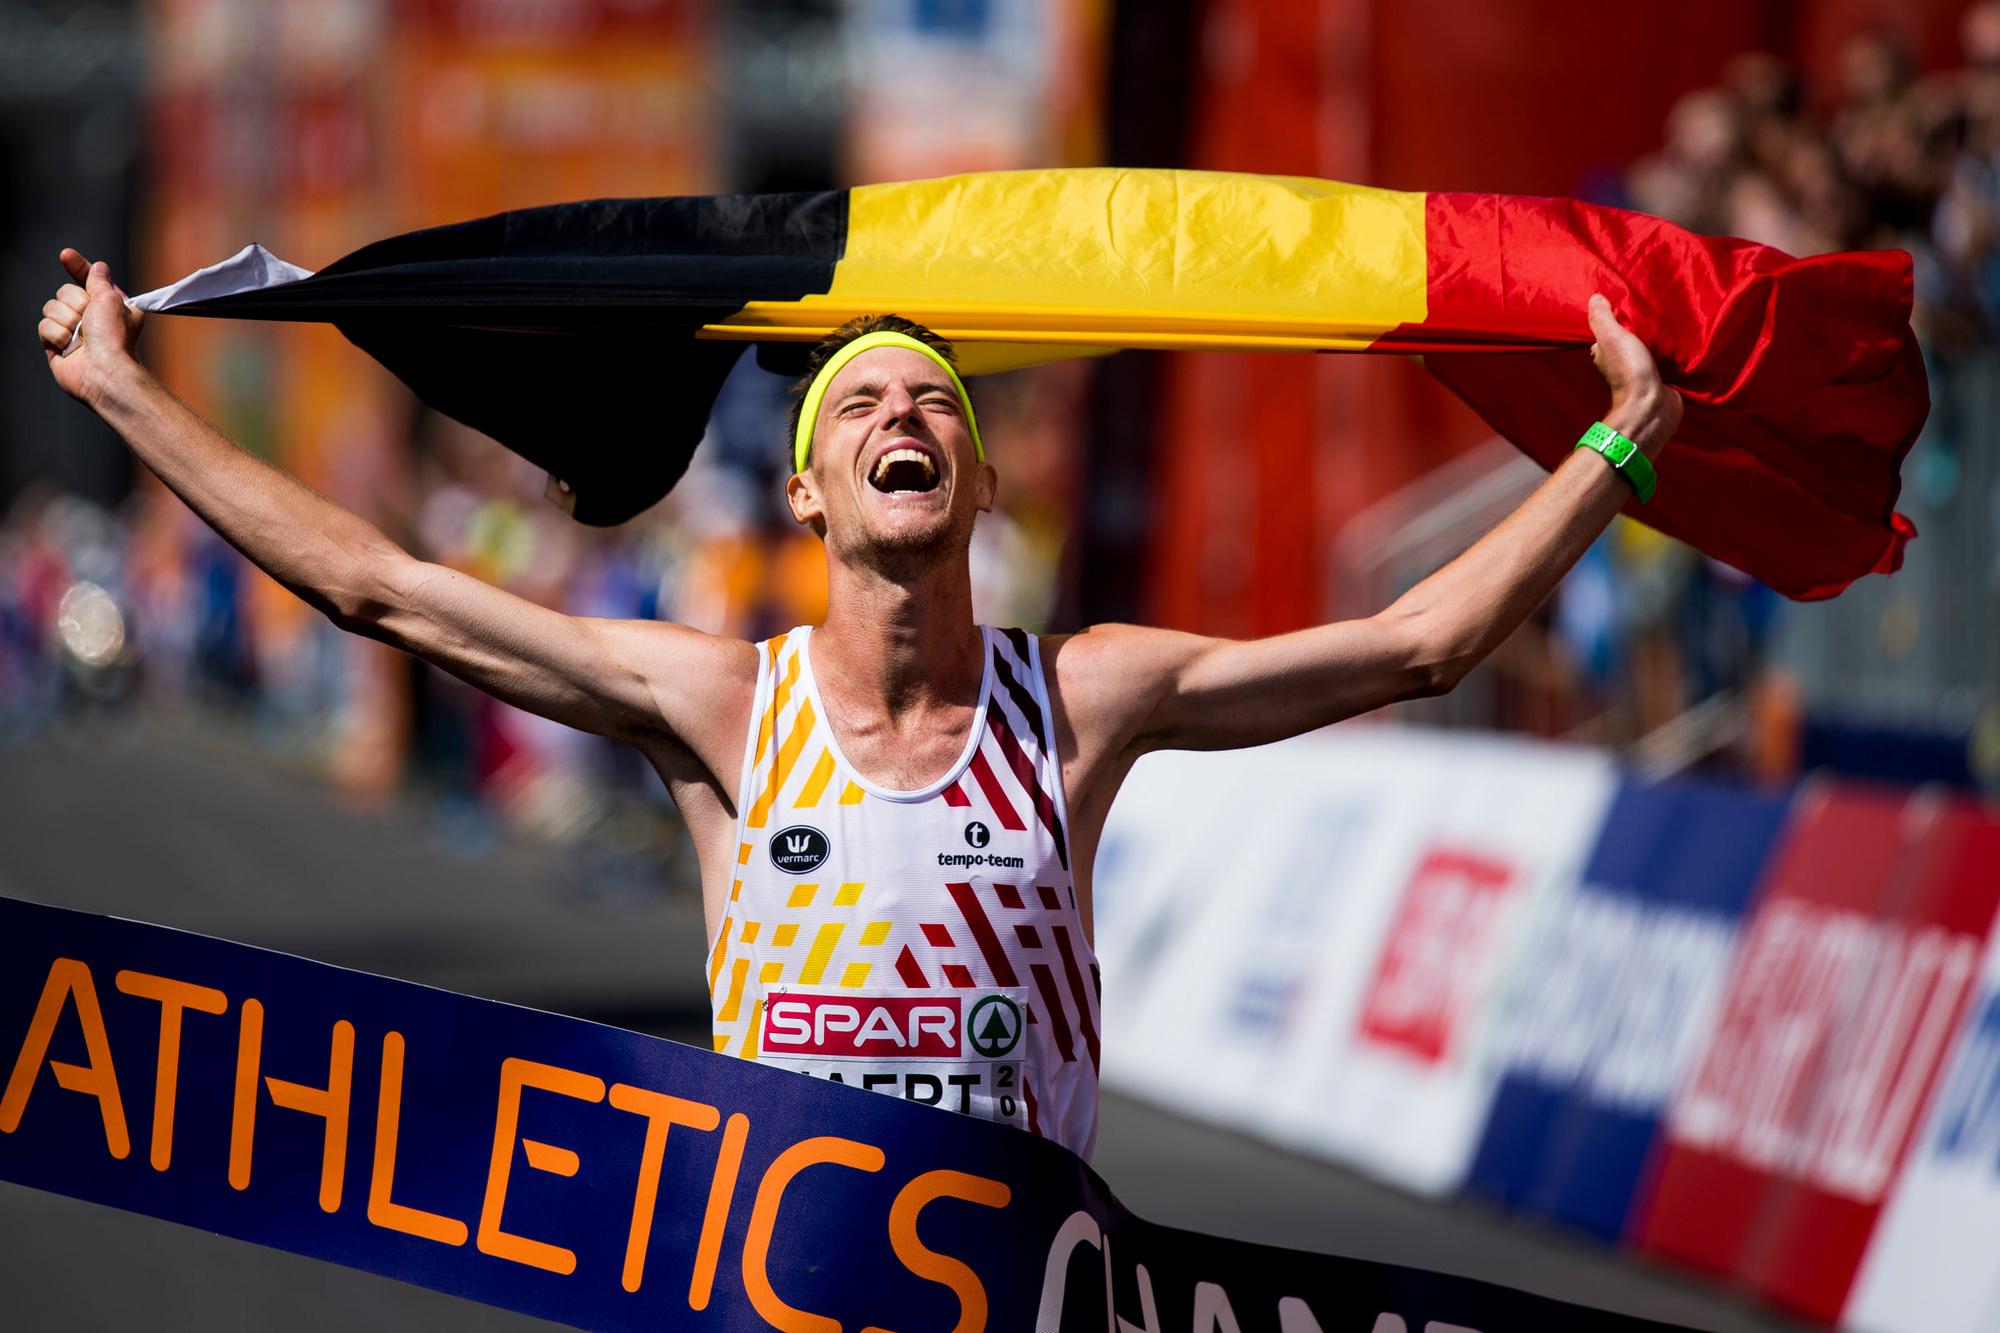 Koen Naert, Europees kampioen op de marathon in 2018.